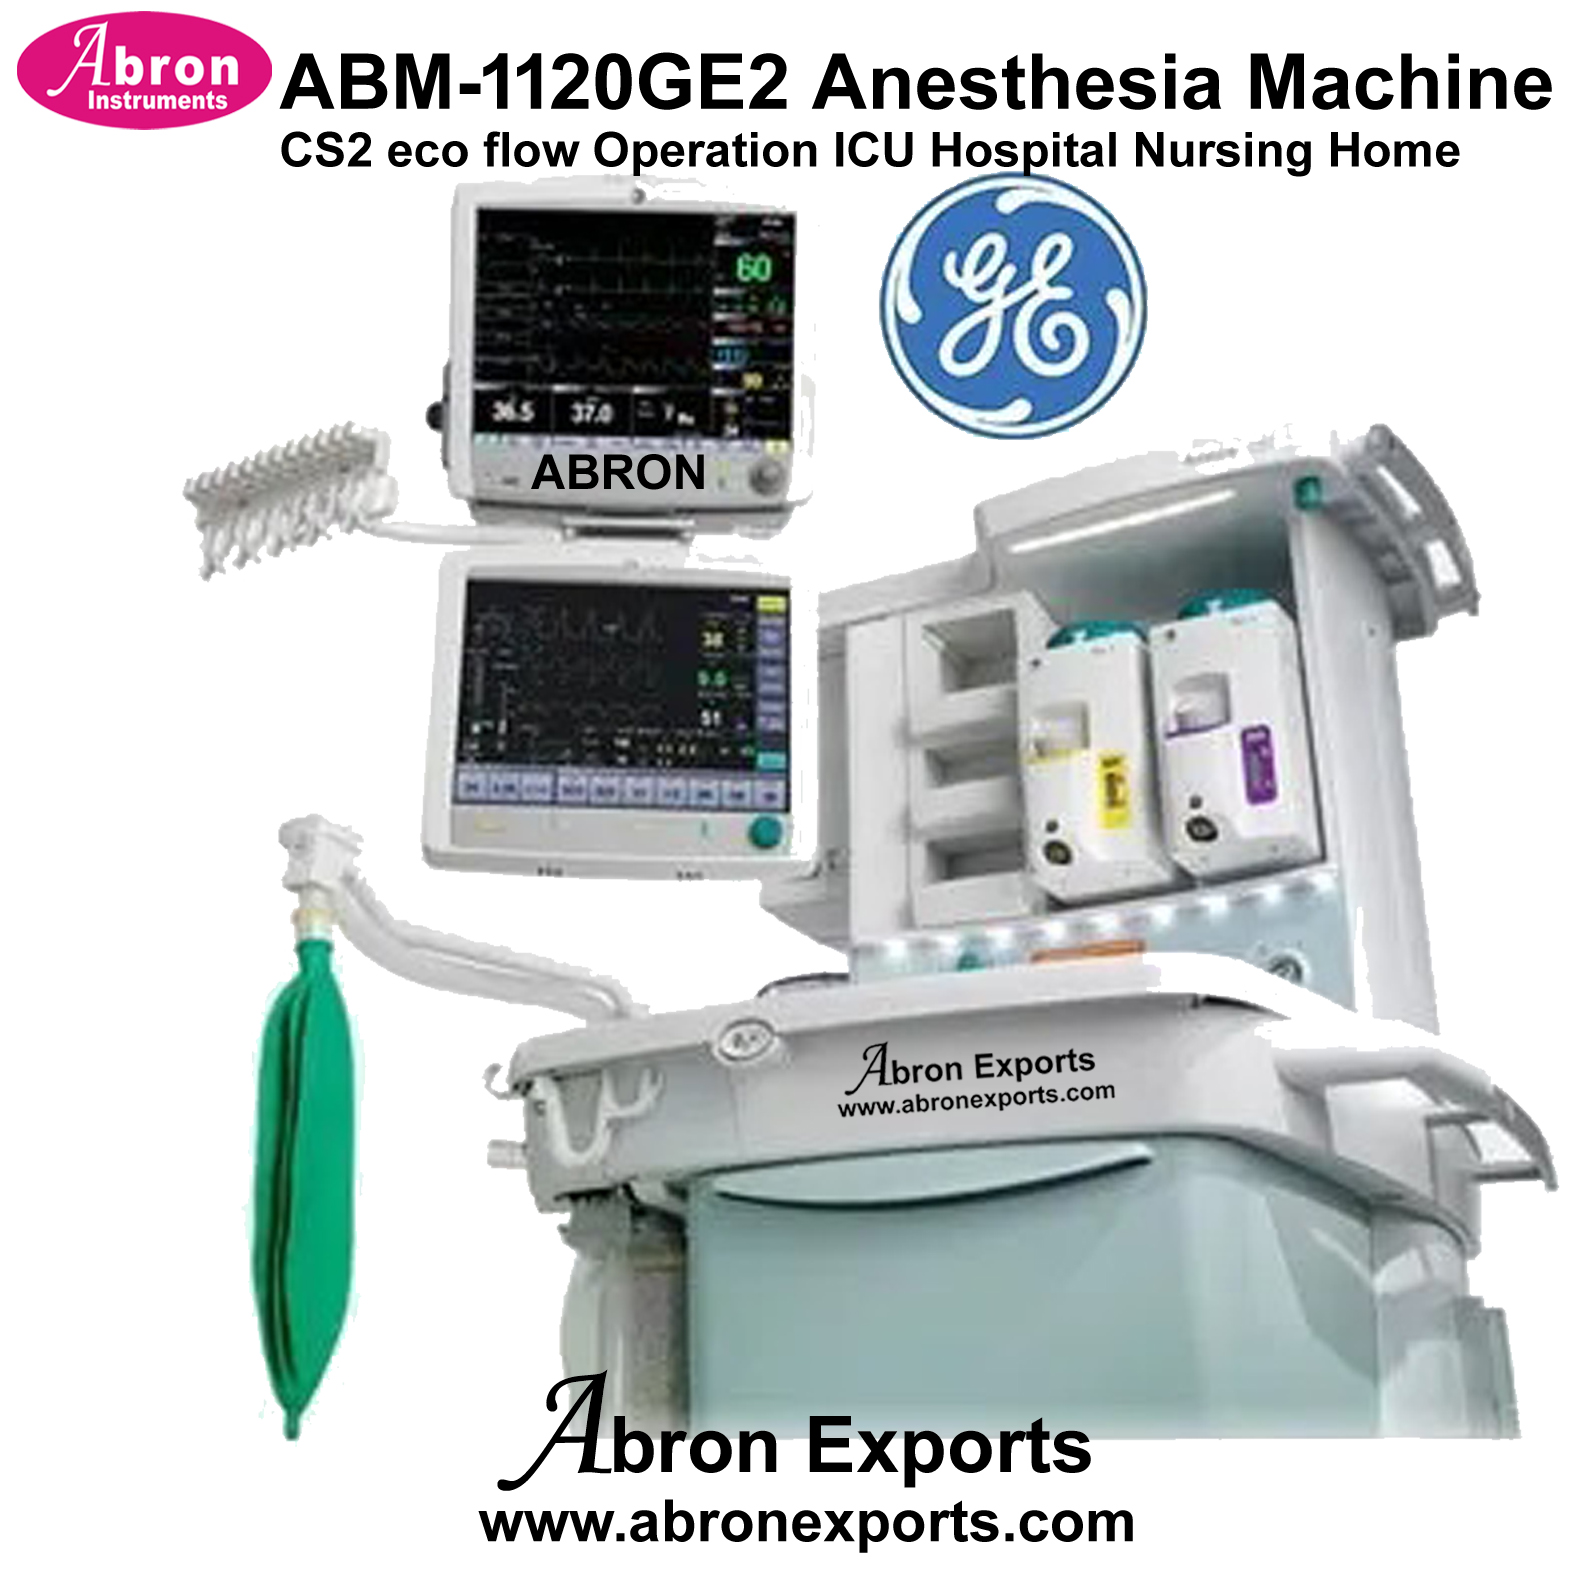 Anesthesia Machine CS2 with eco flow Operation ICU Hospital Nursing Home Medical Abron ABM-1120GE2 